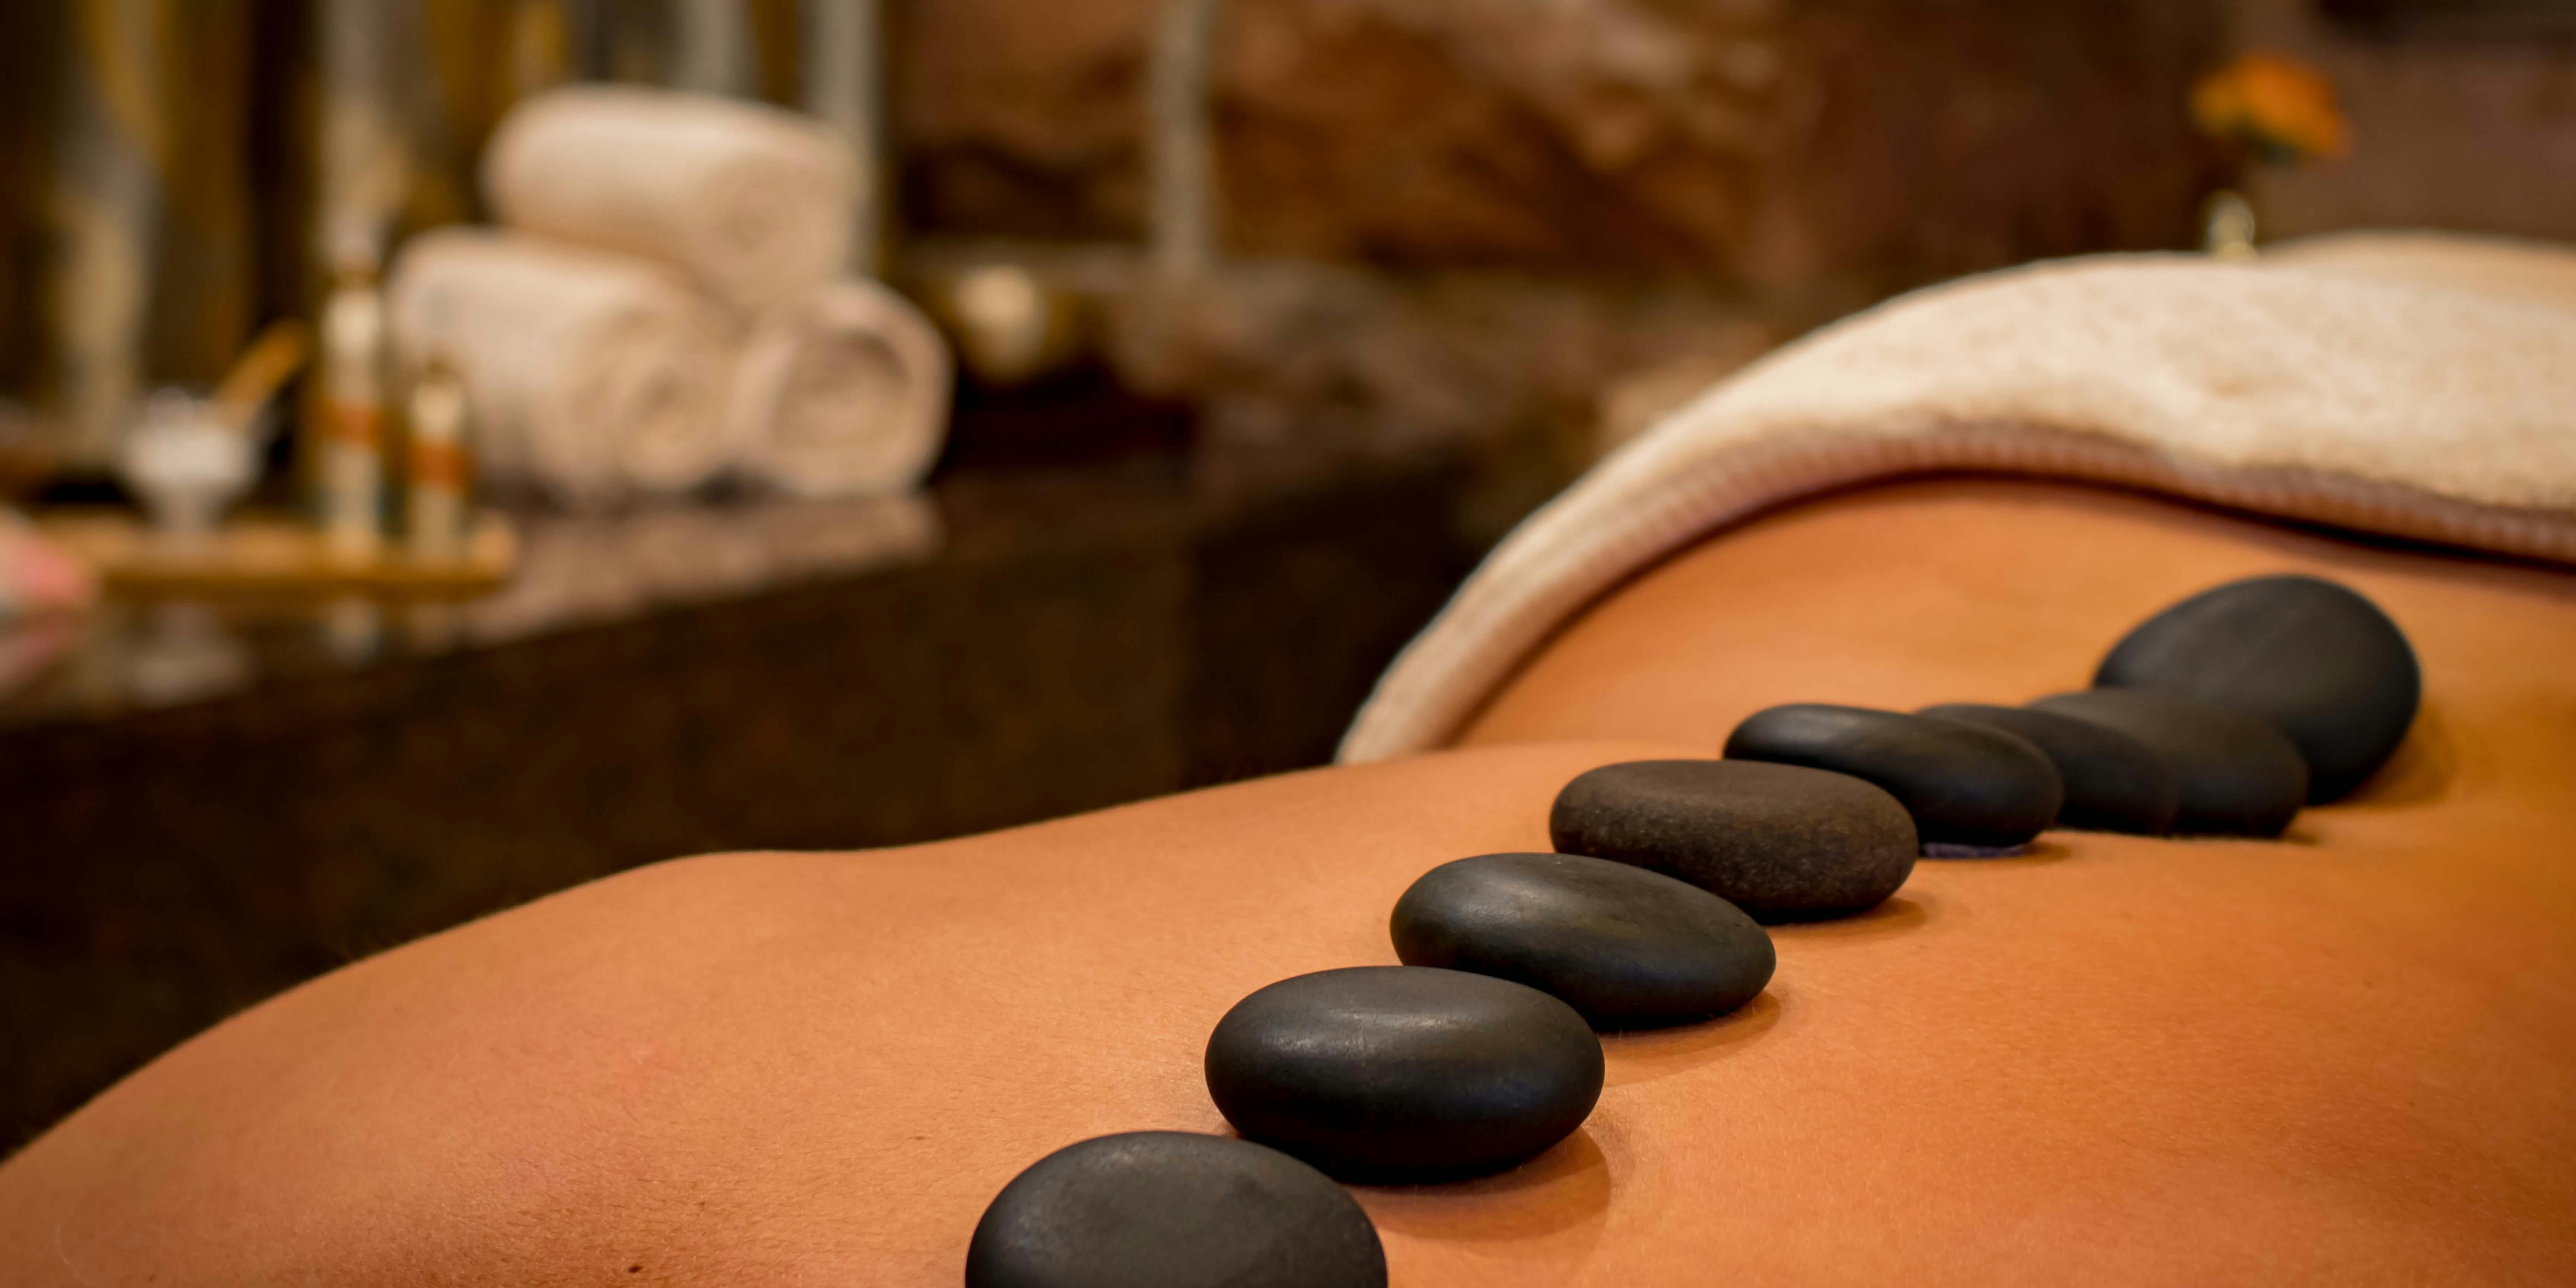 Modelage – massage aux huiles et aux pierres chaudes – détoxification – soin bien être – relaxation et détente – soin naturel – voyage intérieur – soigner naturellement.